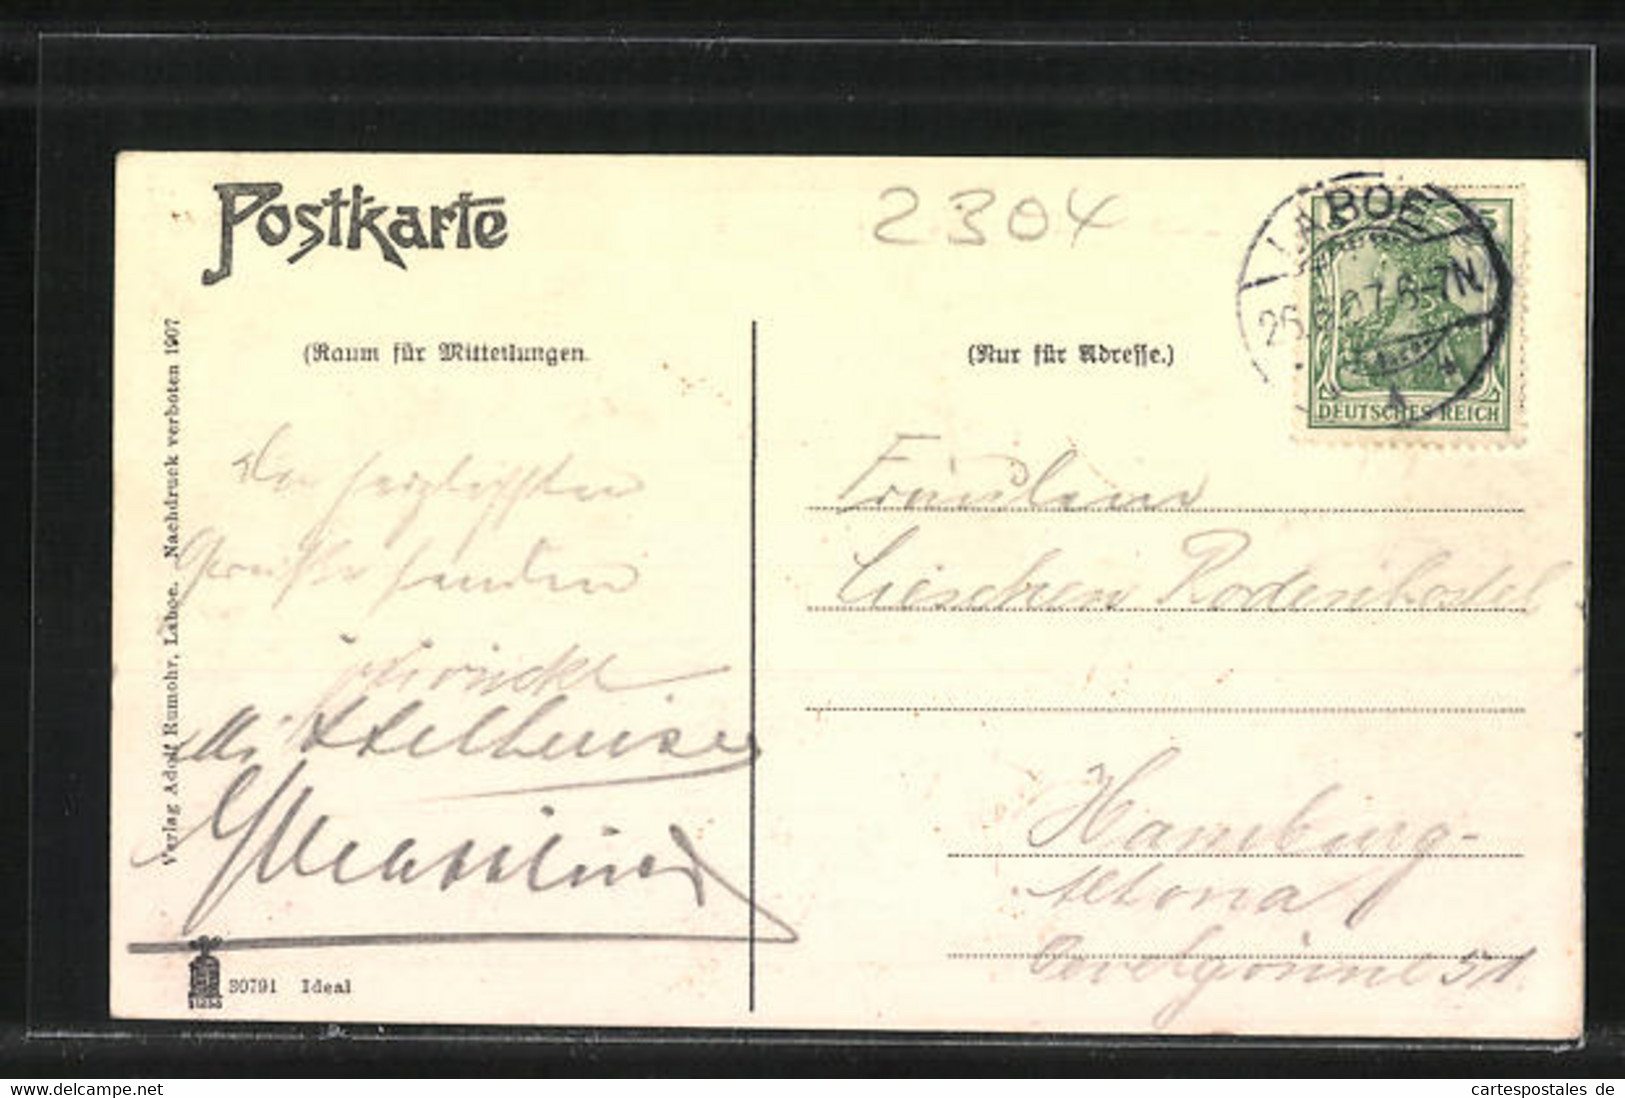 AK Laboe, Kaiserl. Postamt In Der Reventlou Strasse - Laboe